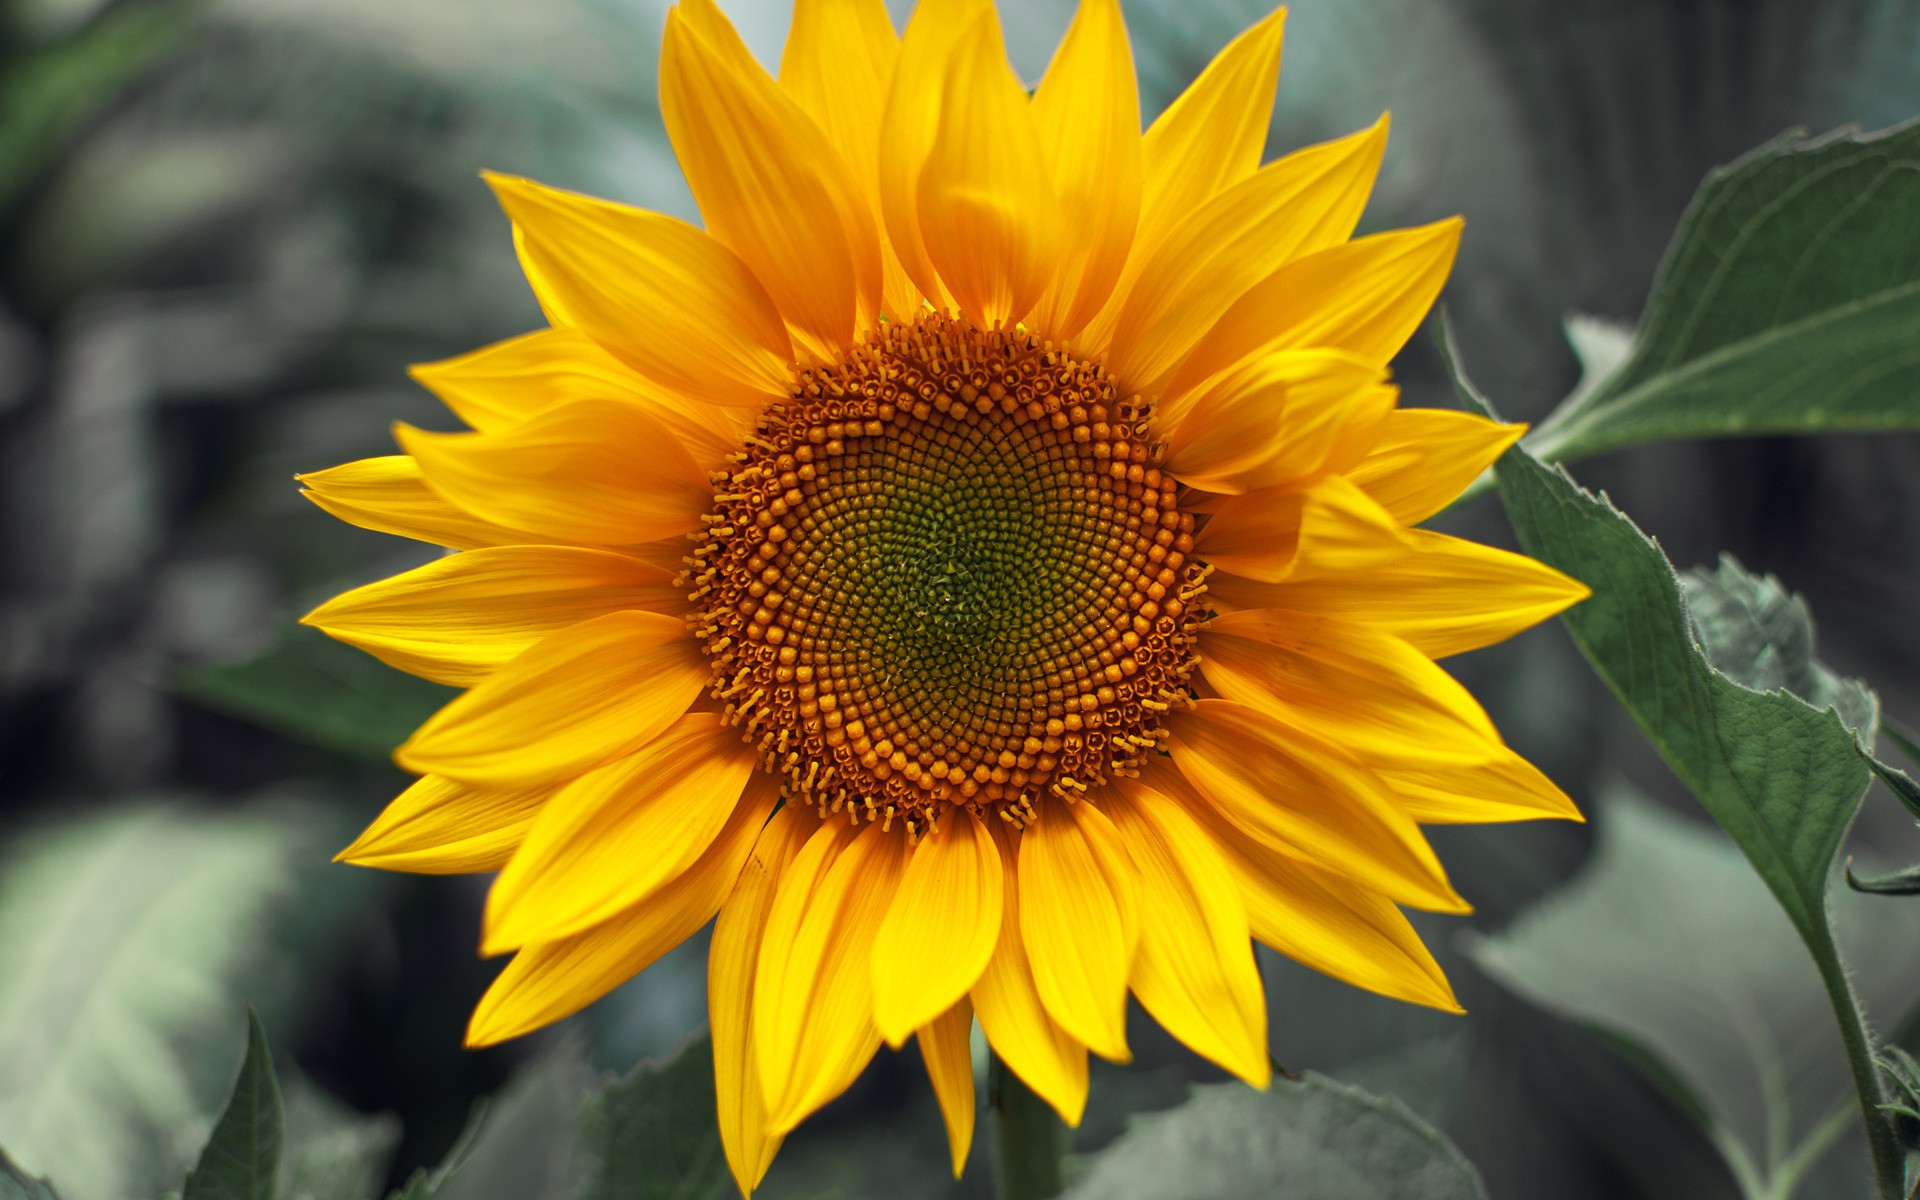 Sunflower HD Wallpaper sẽ làm cho thiết bị của bạn nổi bật và độc đáo hơn bao giờ hết. Với chất lượng hình ảnh tốt nhất, các hình nền hoa hướng dương sẽ giúp bạn có những trải nghiệm đầy đủ và tuyệt vời nhất. Cùng đến với chúng tôi để khám phá bộ sưu tập hình nền hoa hướng dương HD đa dạng và phong phú nhất.